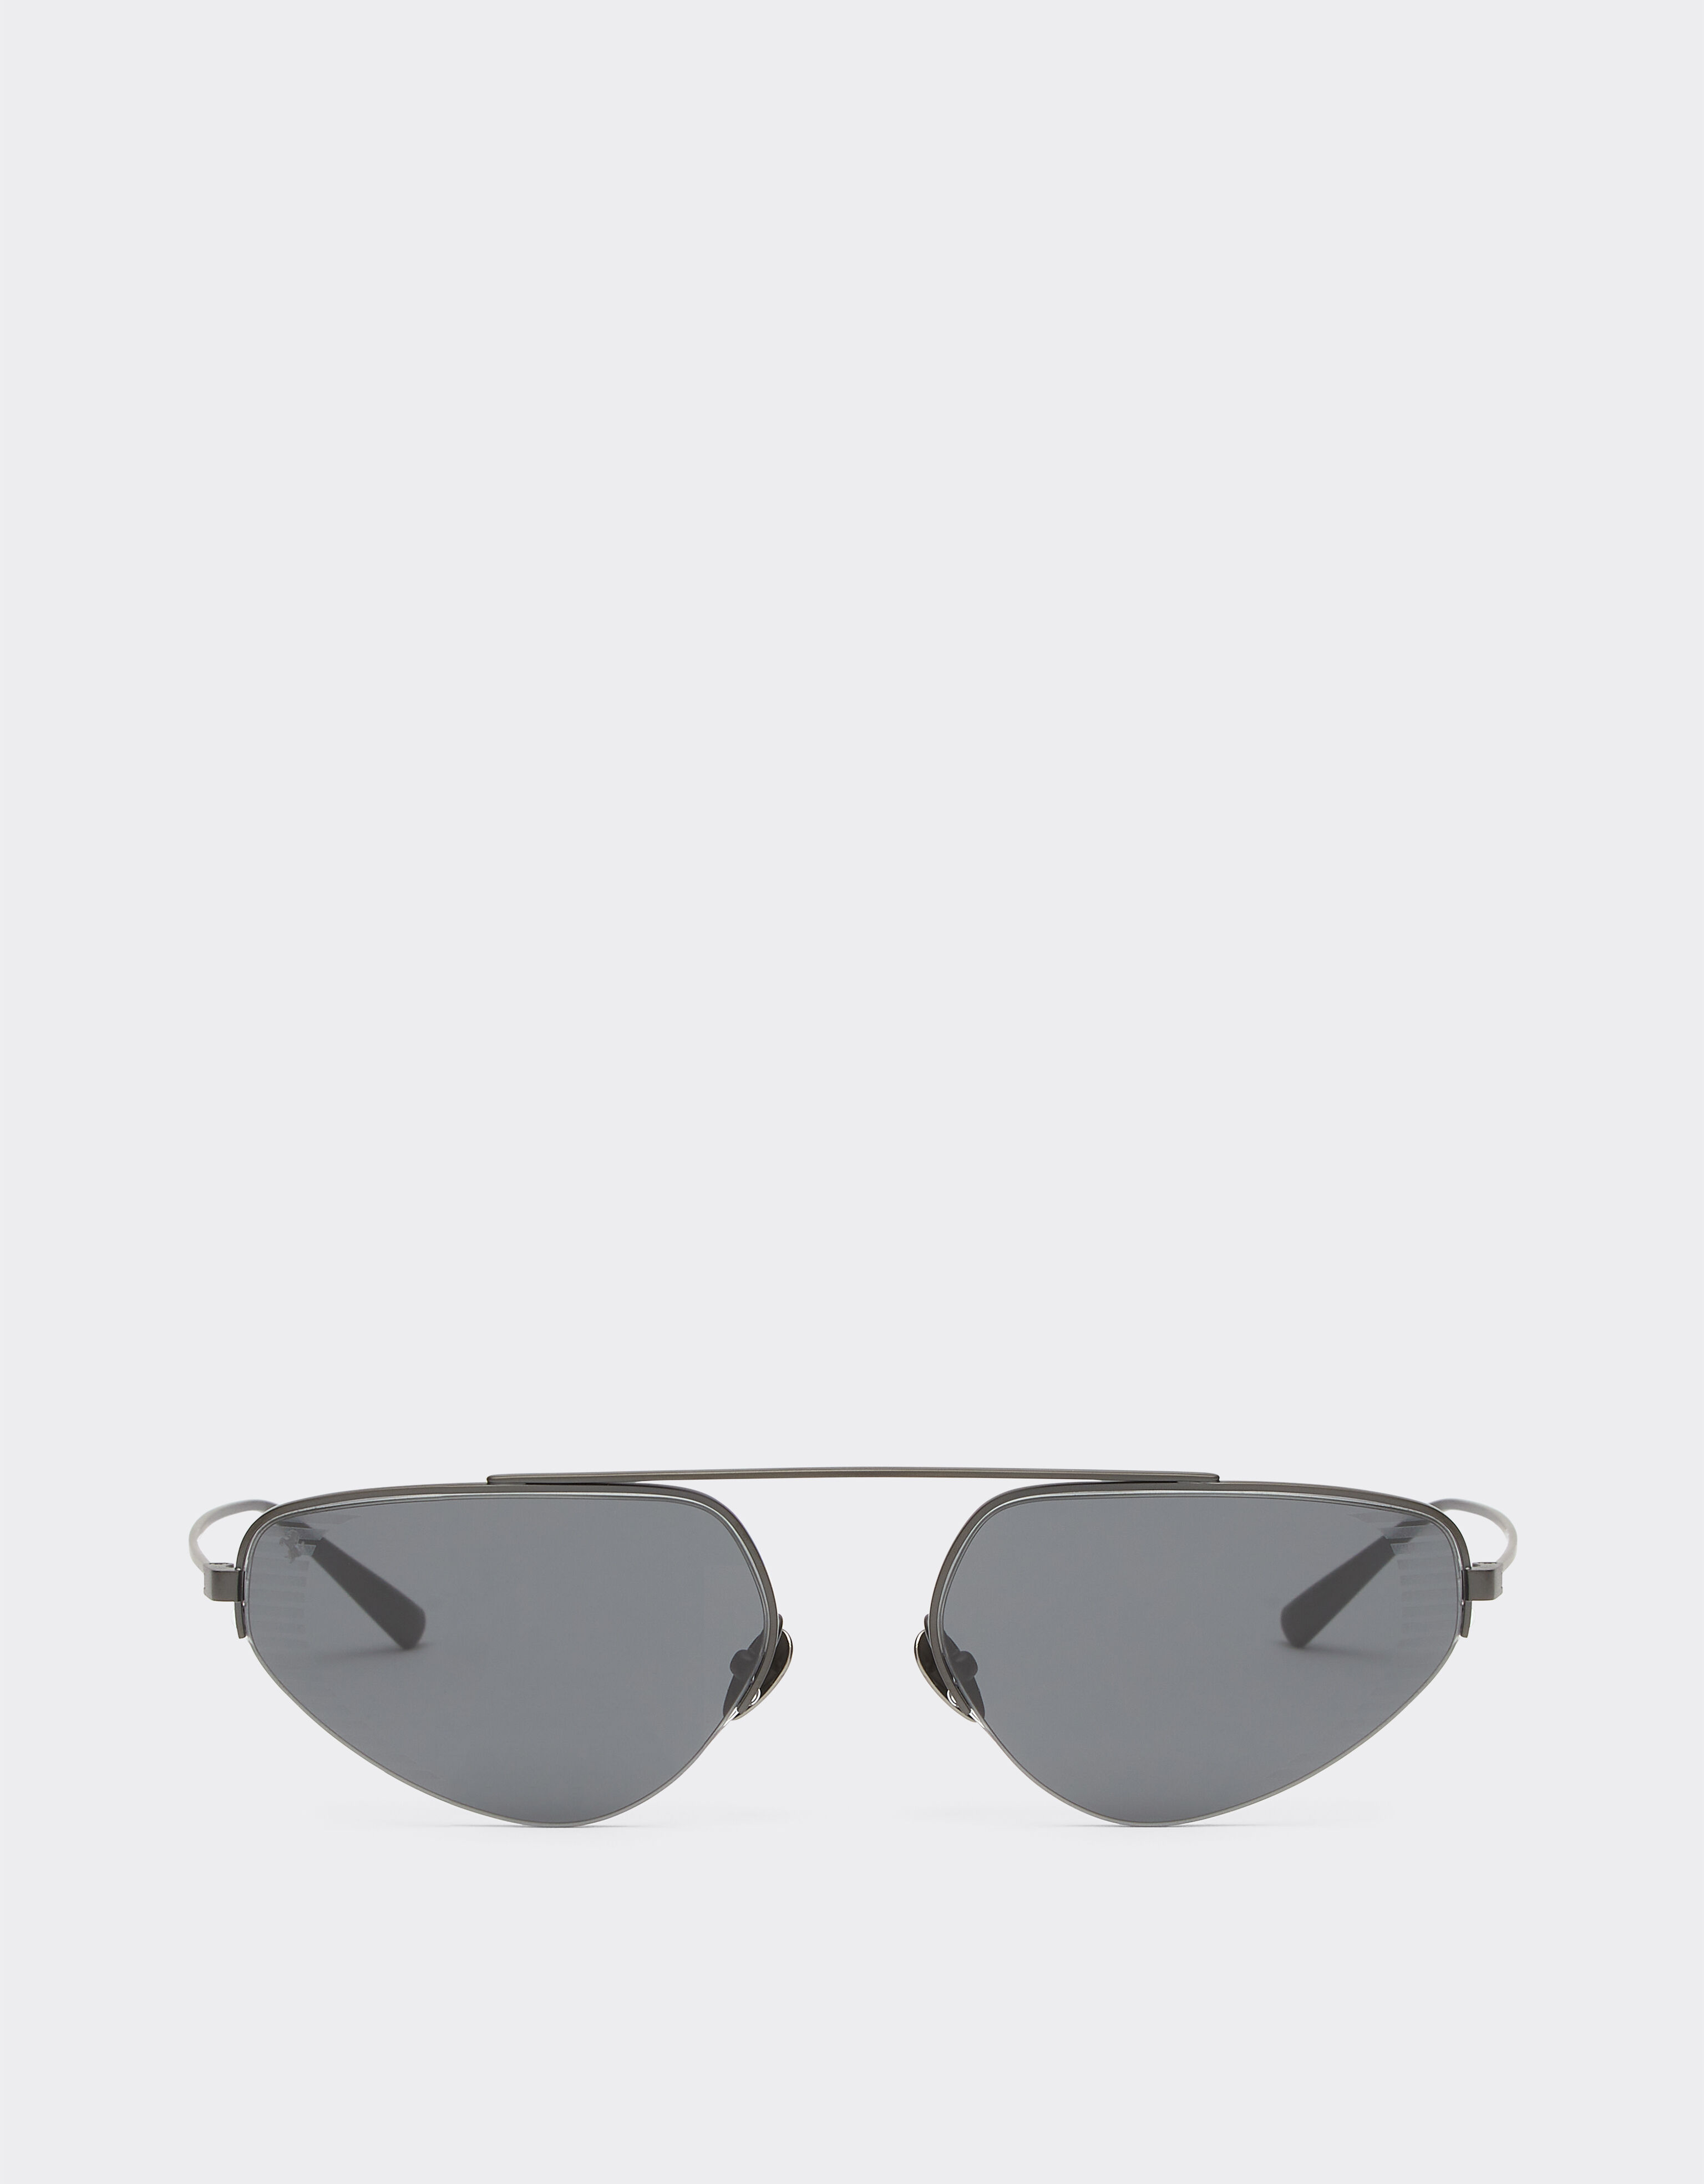 Ferrari Ferrari sunglasses in black titanium with pink lenses Black F1201f